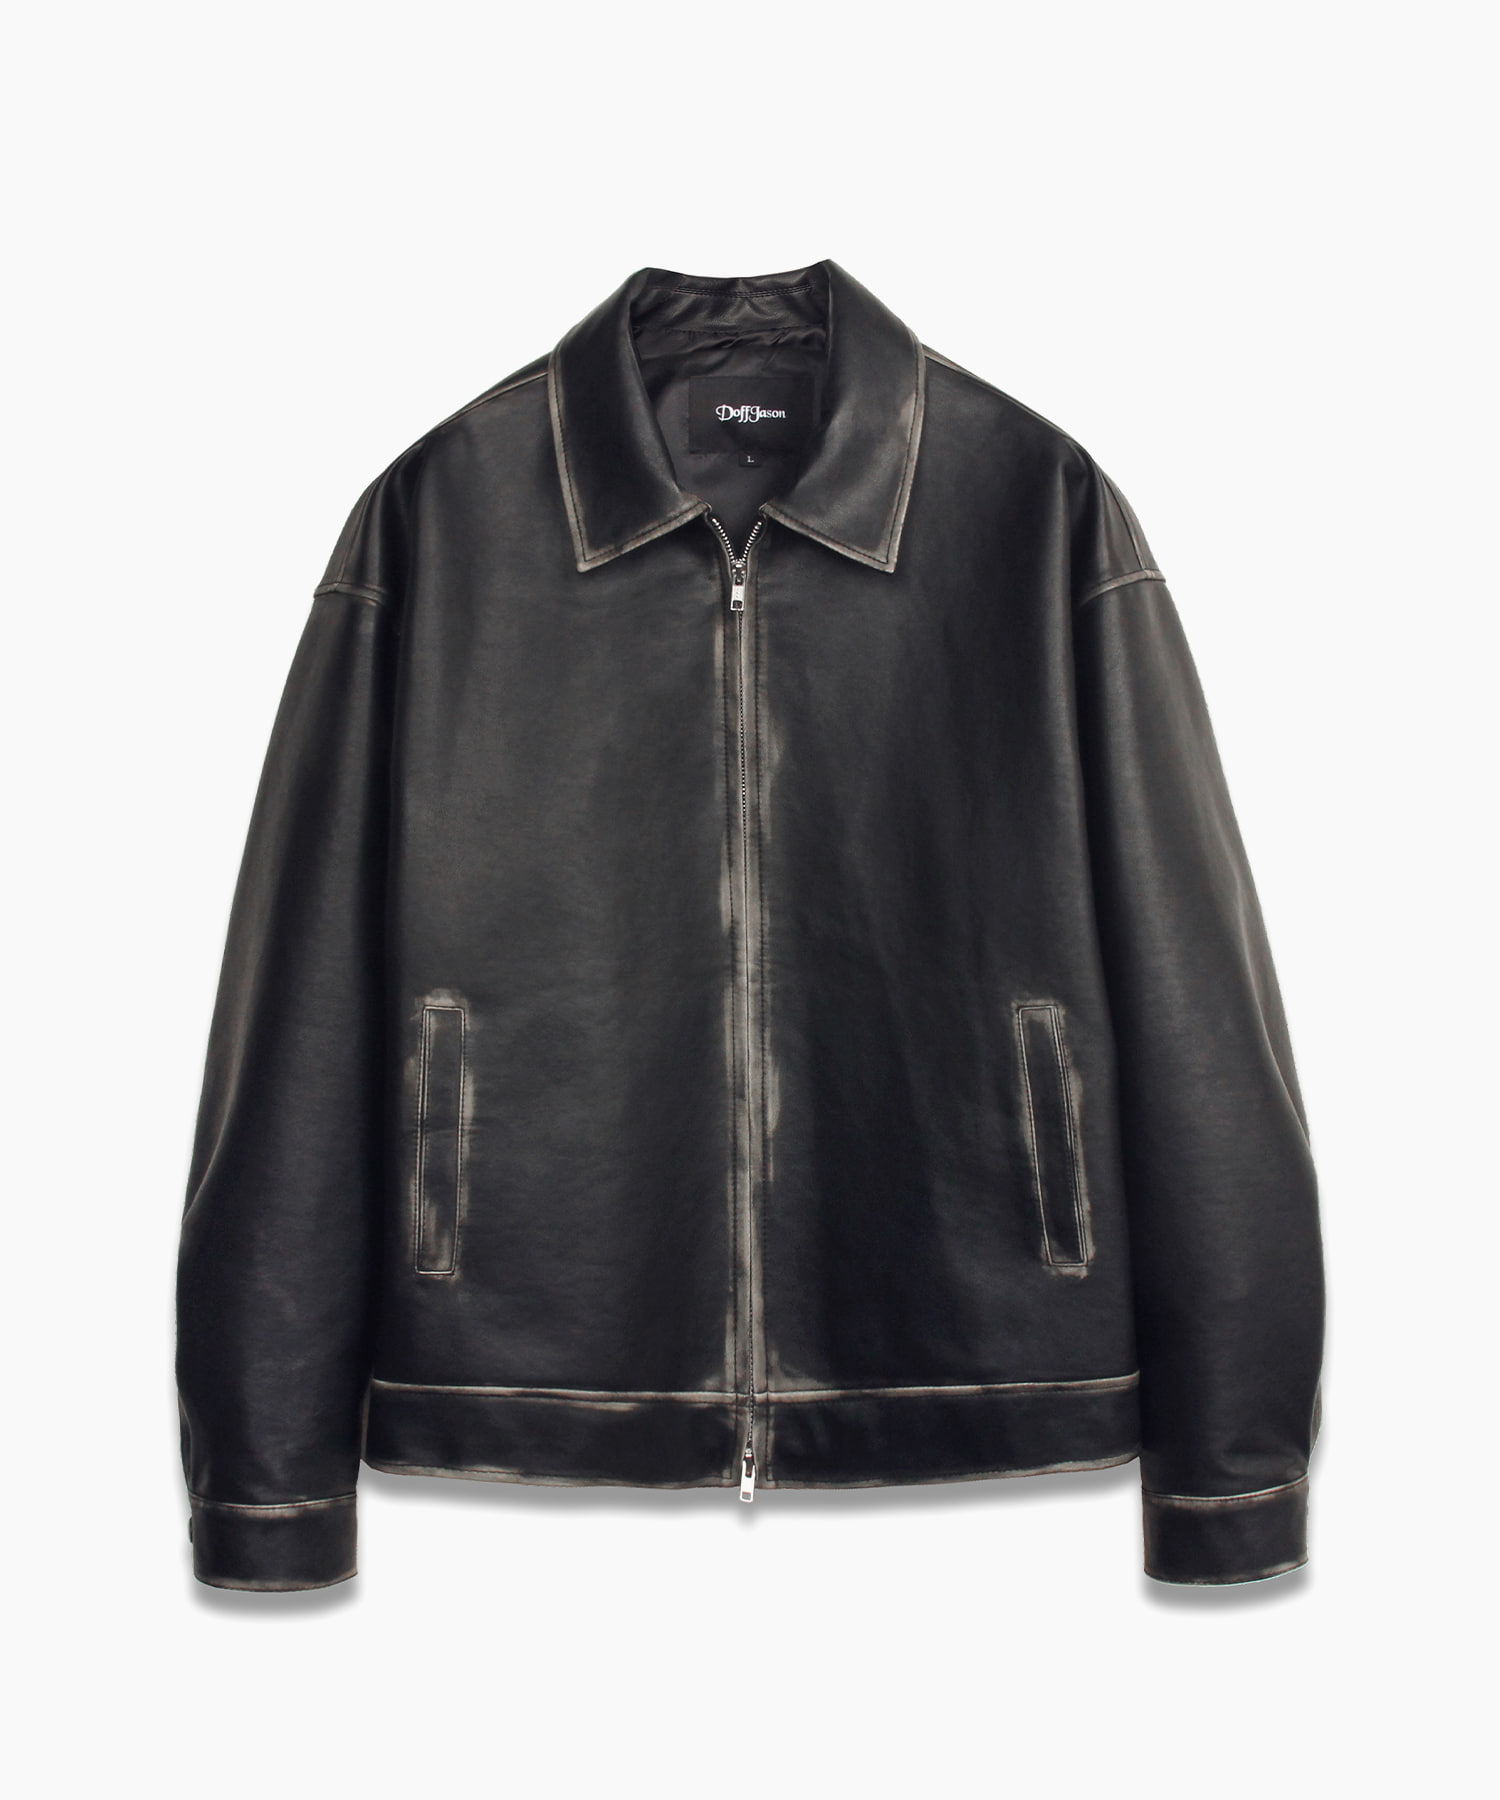 Overfit Washing Leather Single Jacket